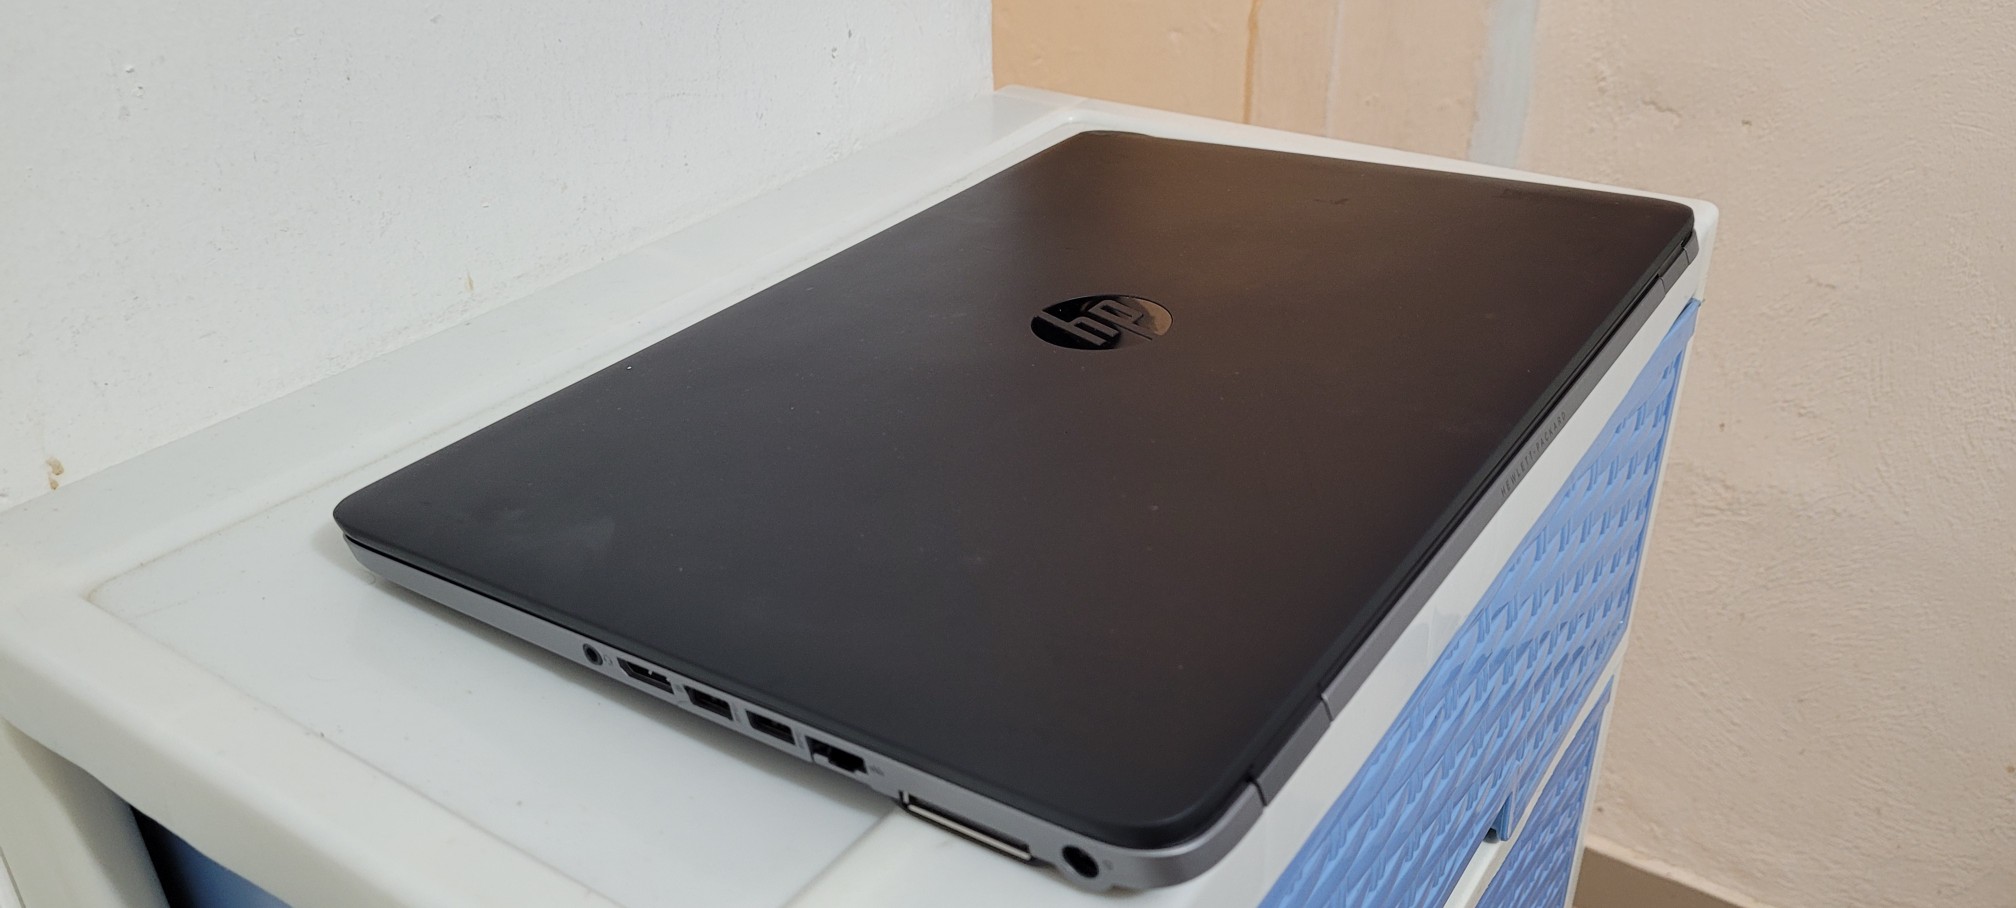 computadoras y laptops - Potente laptop hp Elitebook 17 Pulg Core i7 Ram 16gb SSD 500GB VIDEO 8GB 2